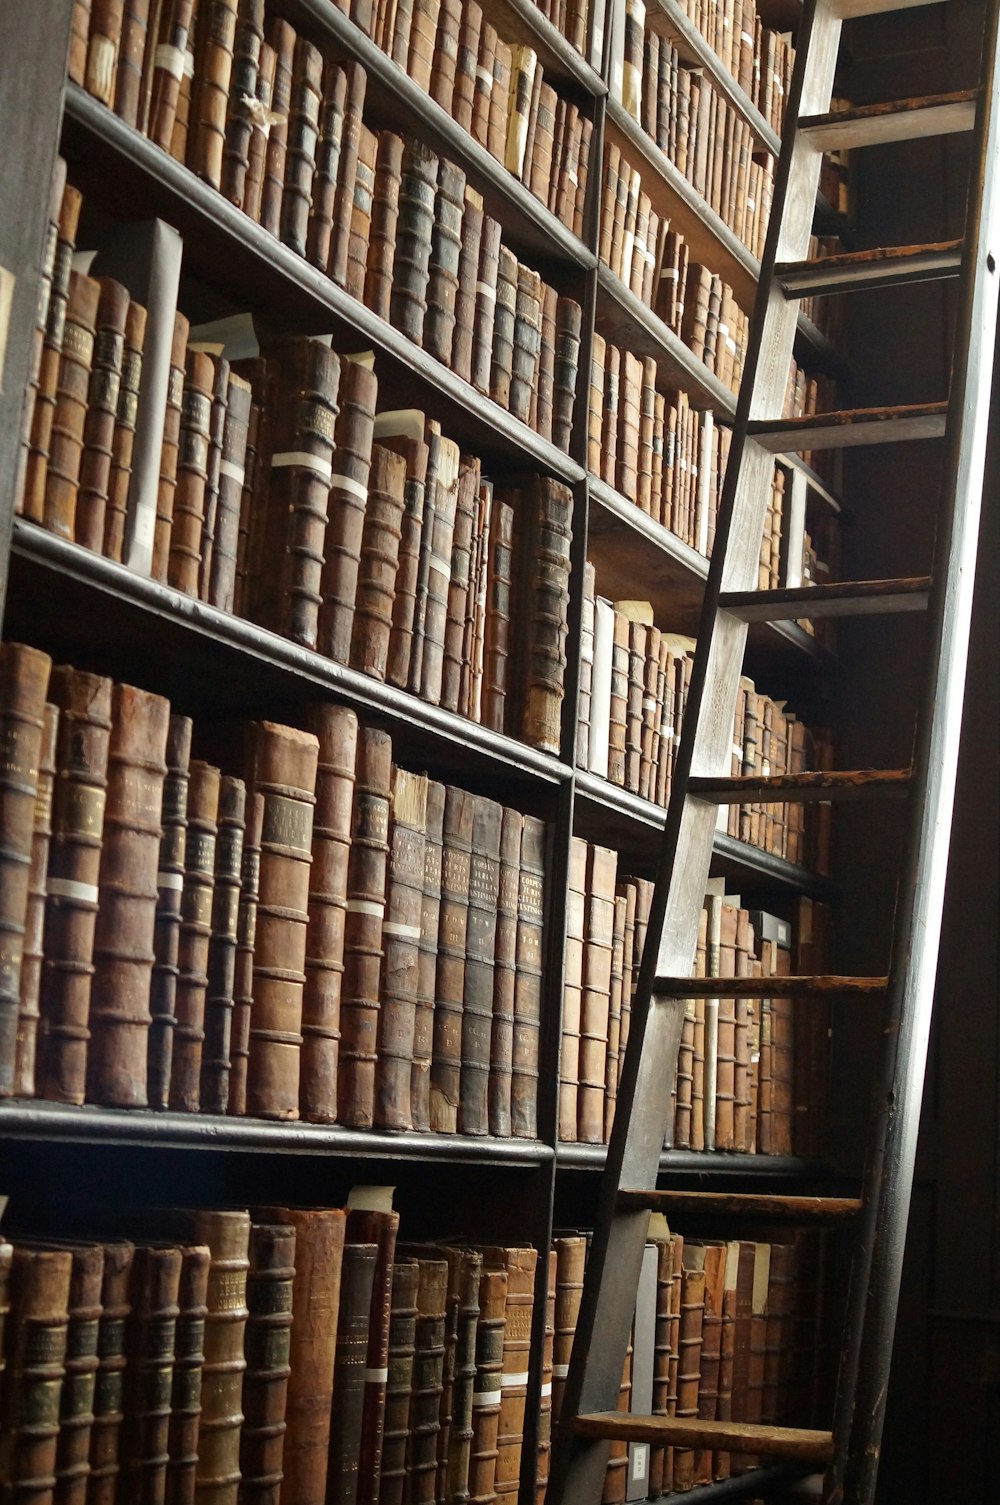 wooden ladder by bookshelves